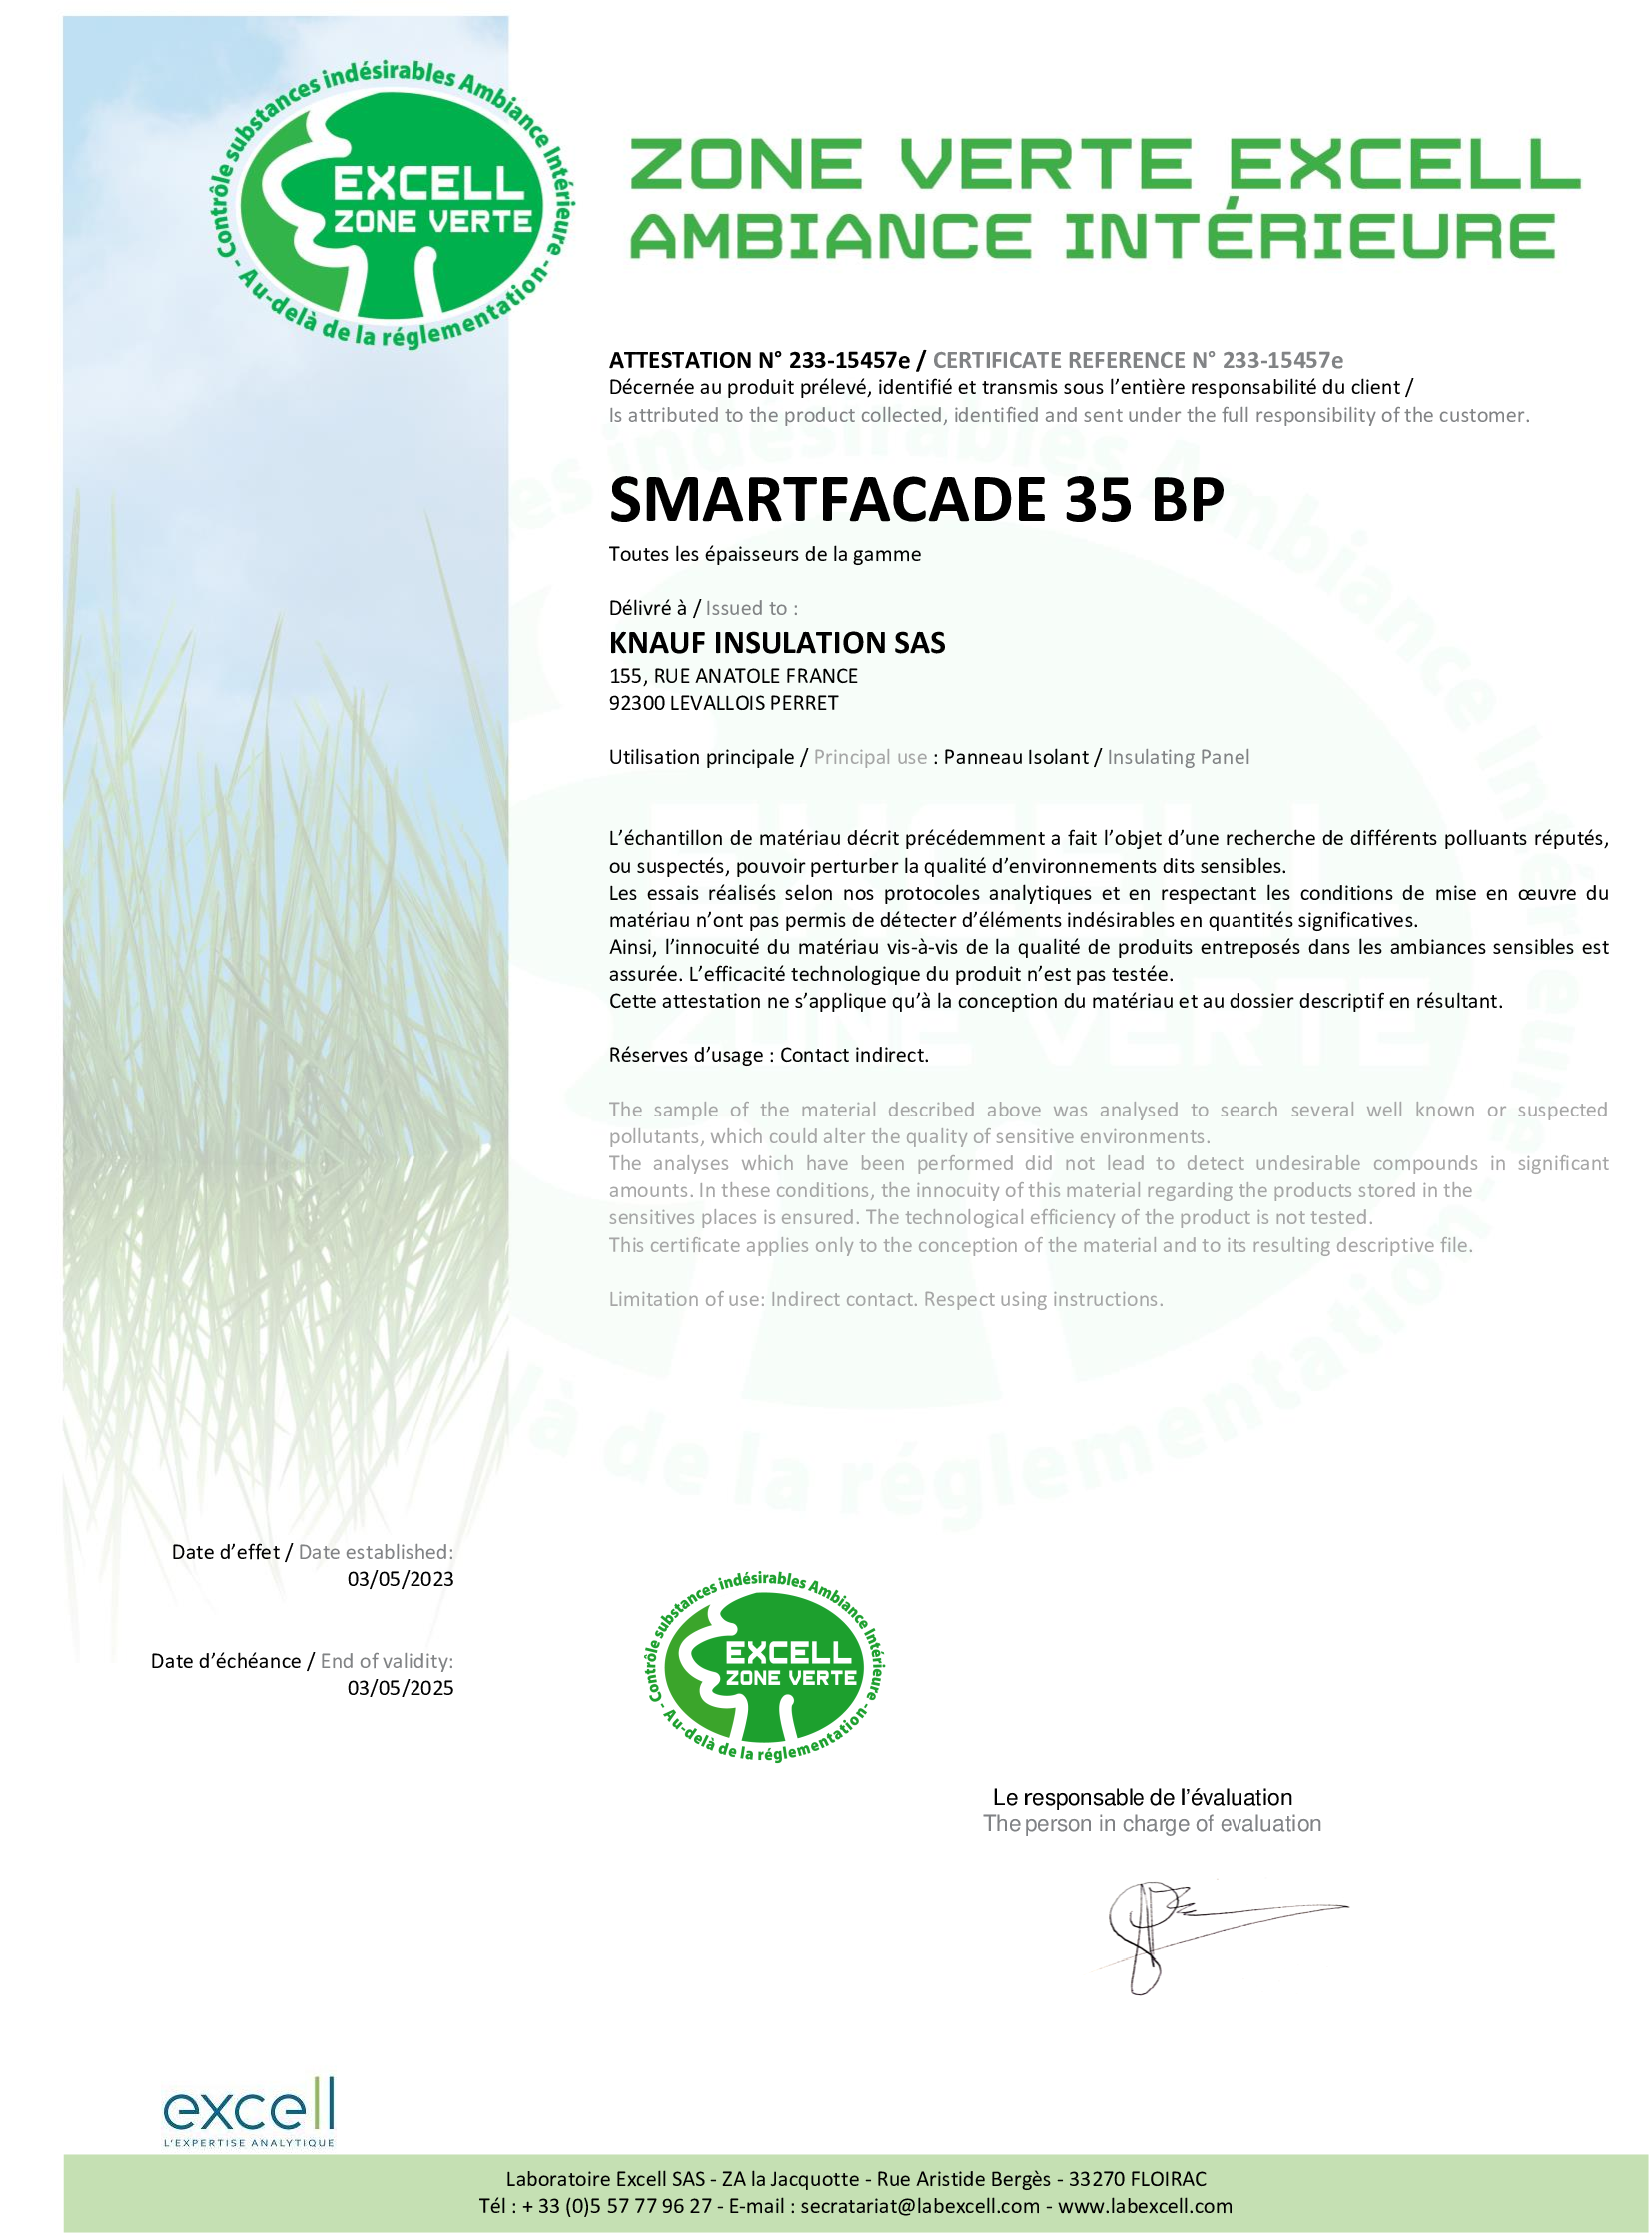 Label Excell - Smartfacade 35 BP